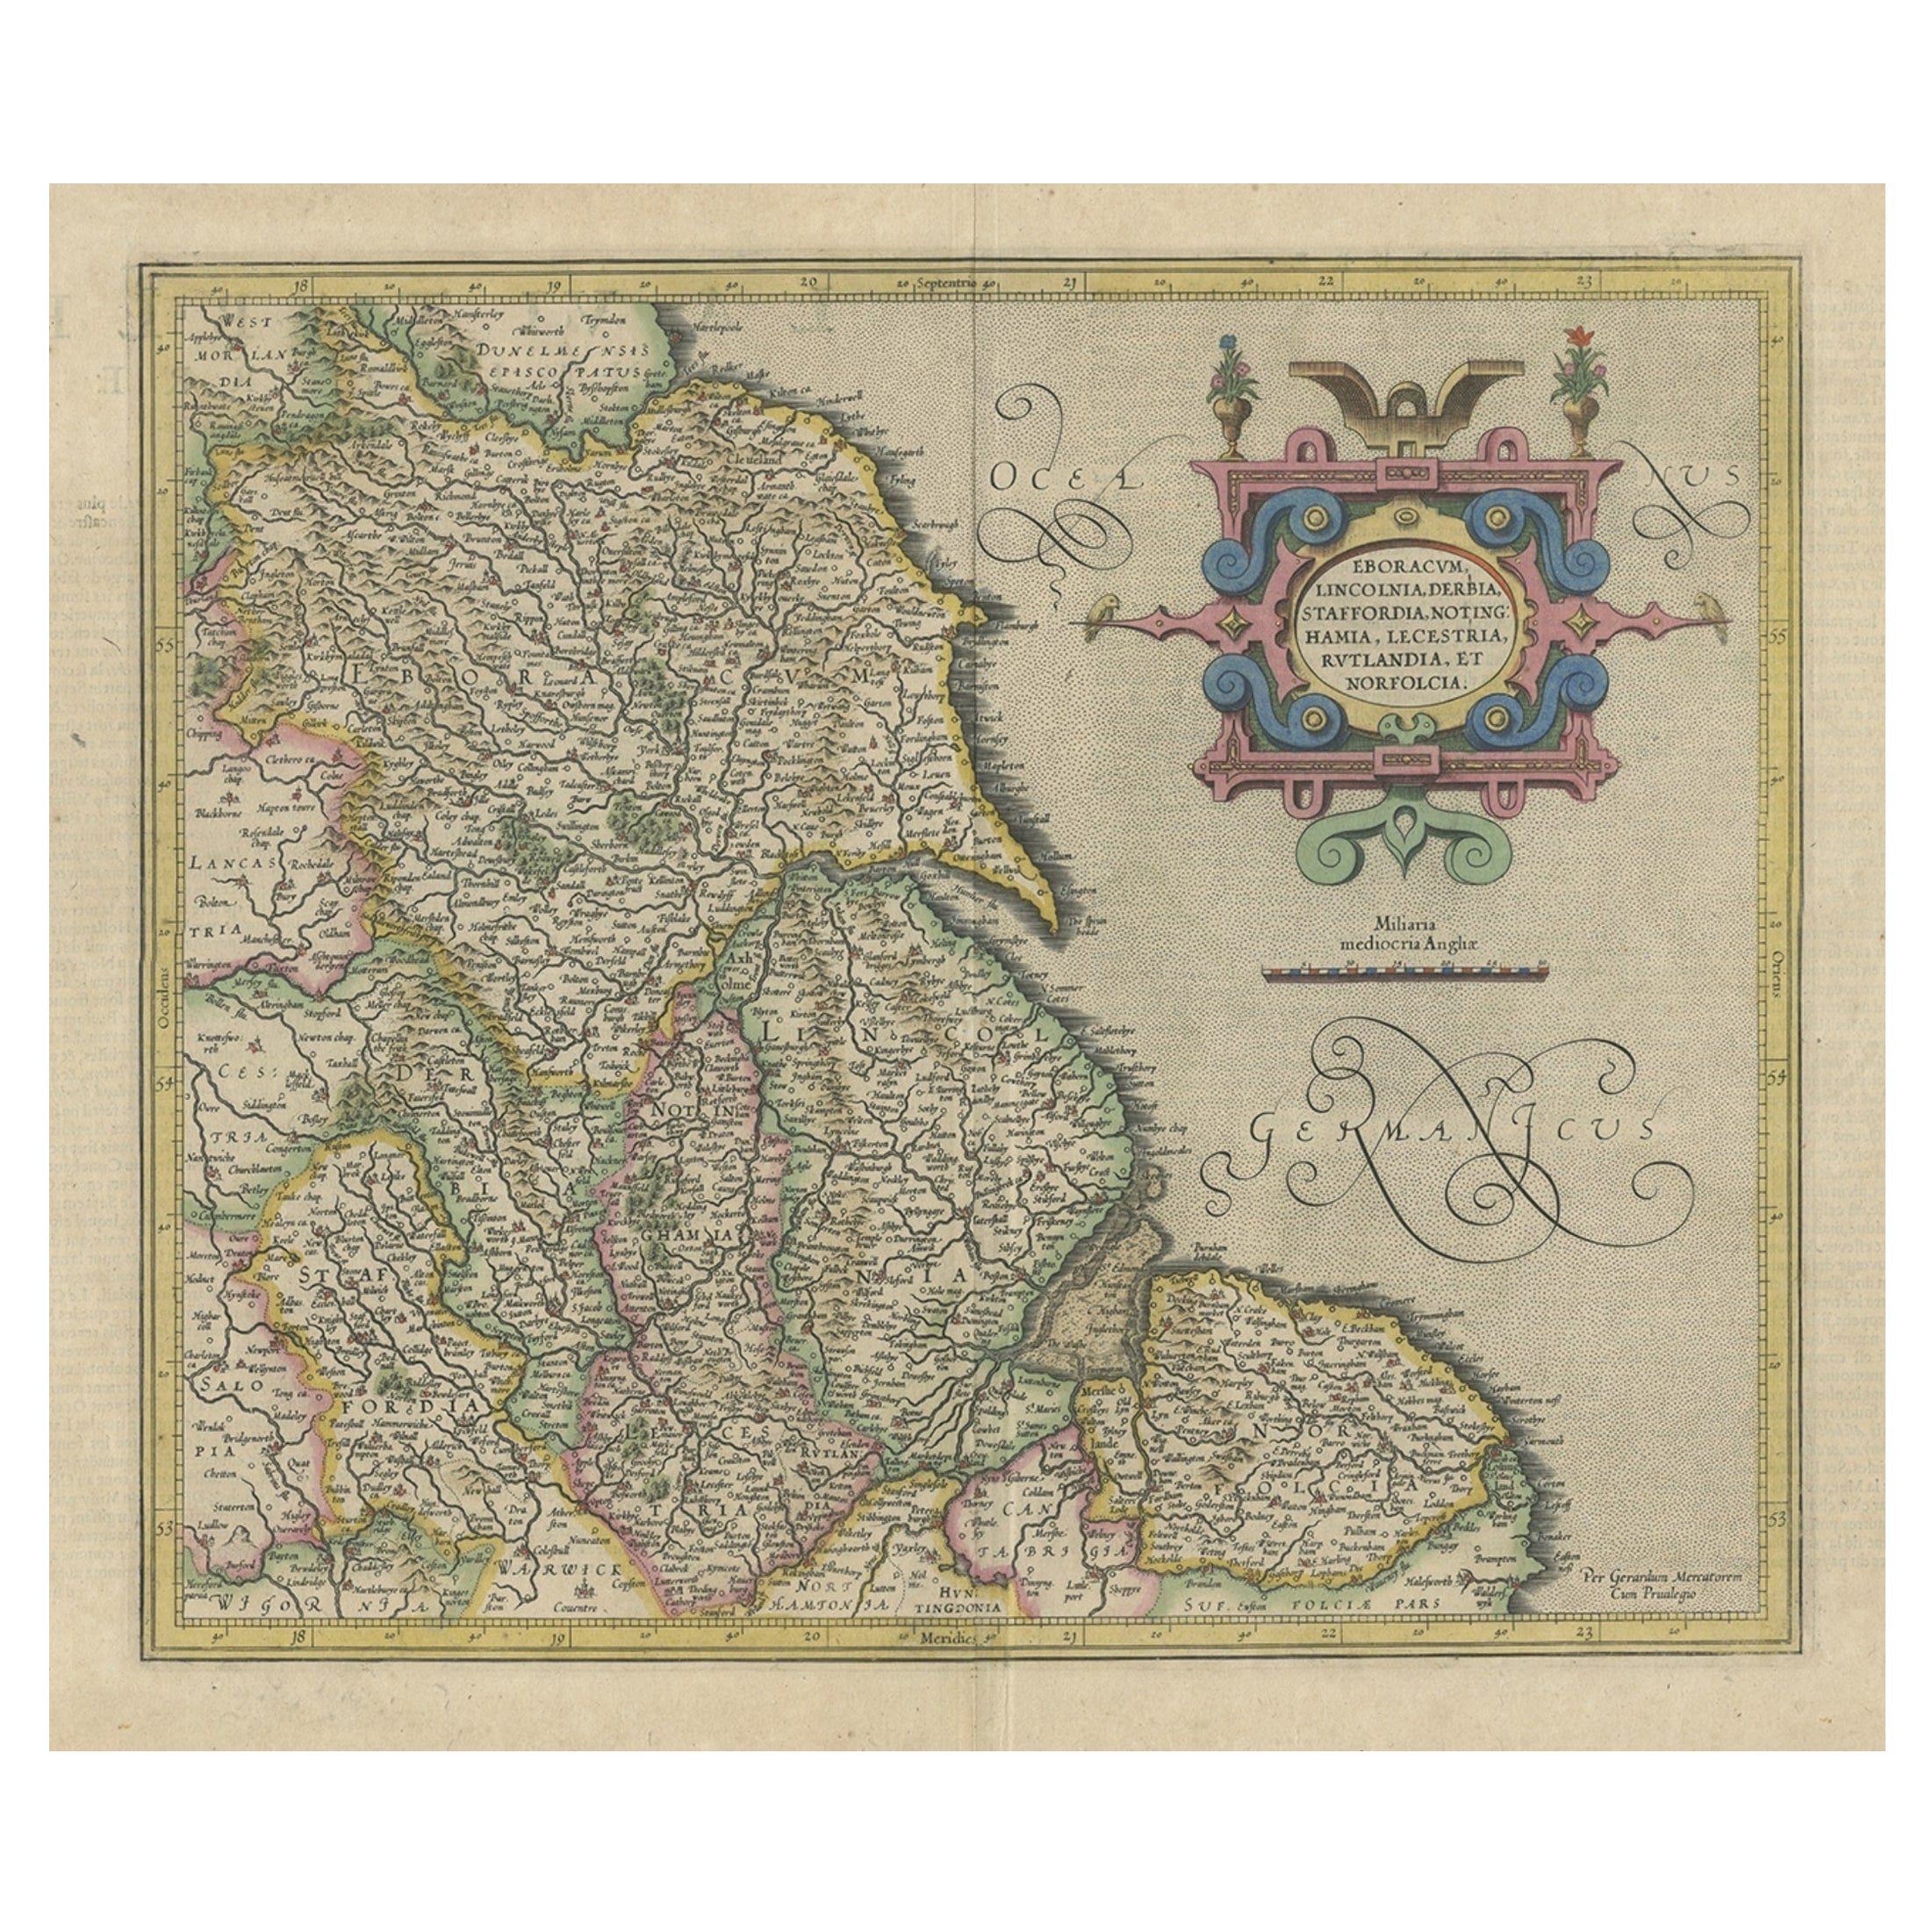 Carte décorative ancienne colorée à la main du nord-est de l'Angleterre, vers 1620